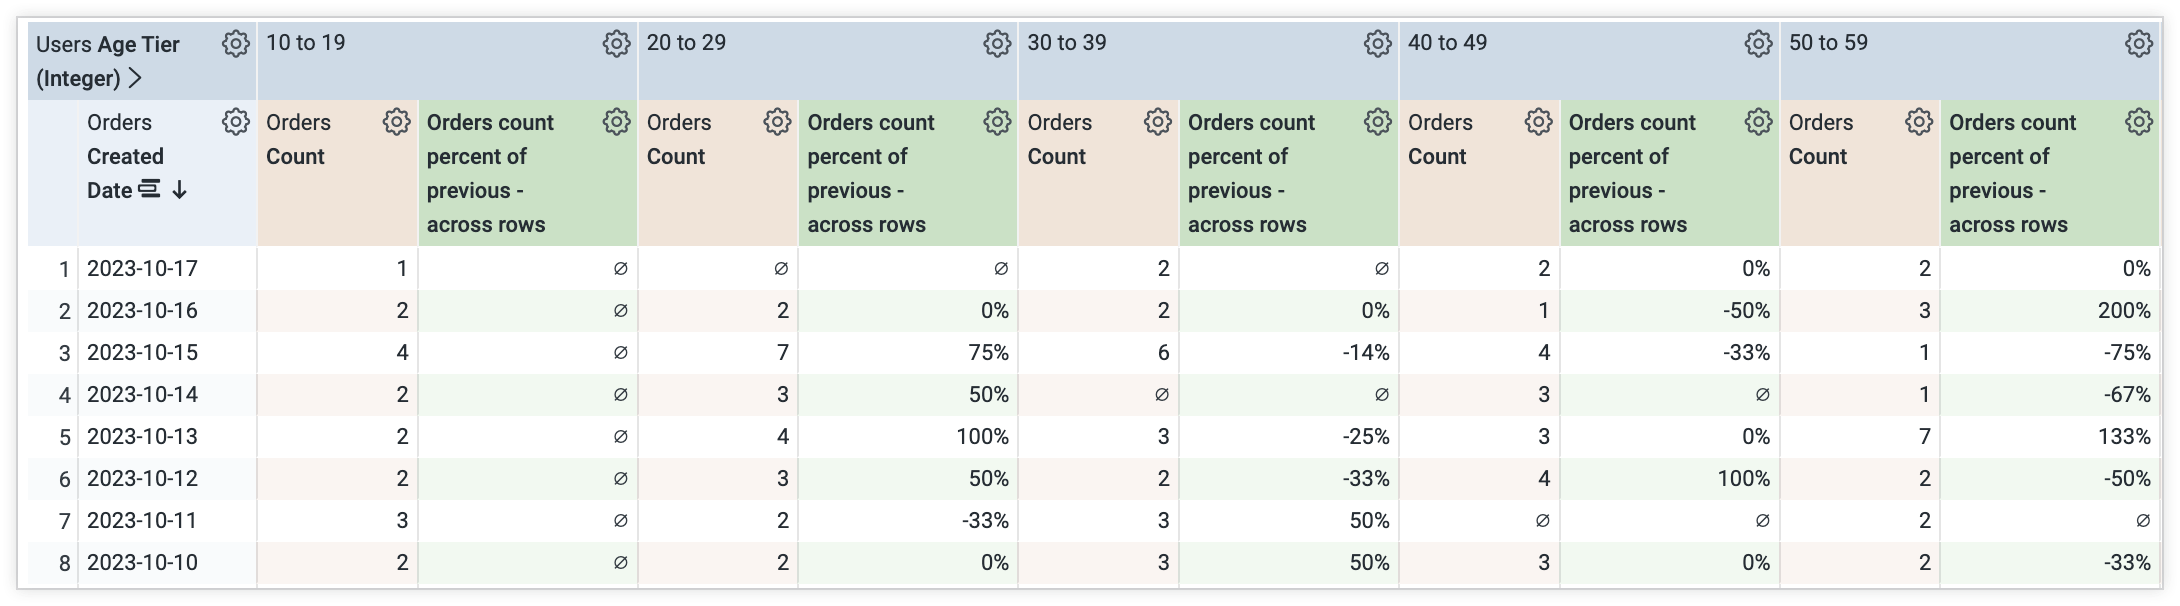 Tabella Esplora dati che mostra una nuova colonna pivot per la variazione percentuale del conteggio degli ordini tra righe diverse.